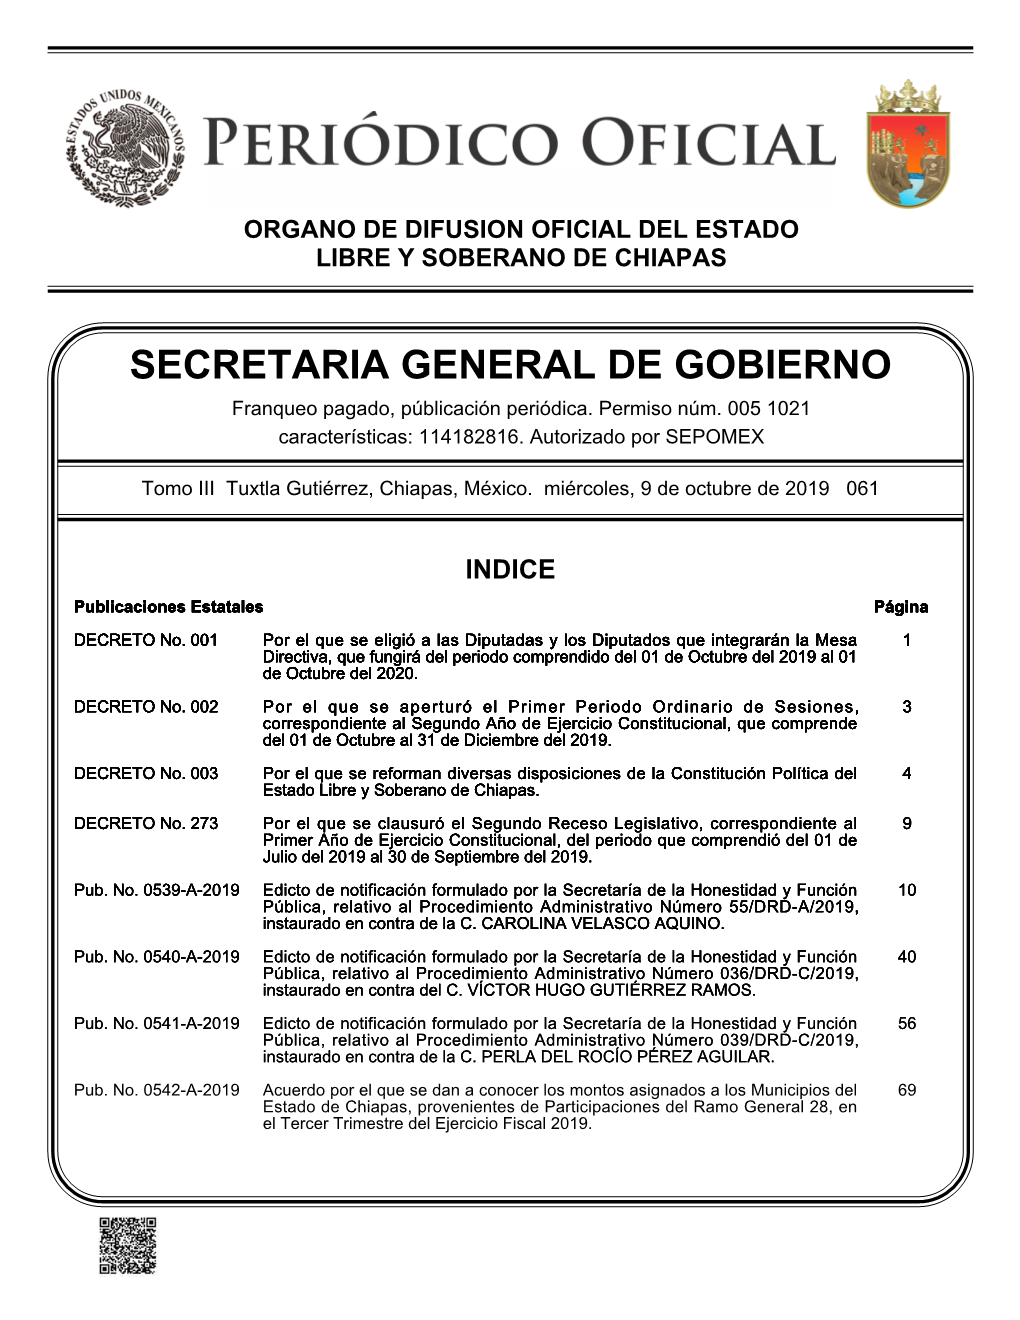 SECRETARIA GENERAL DE GOBIERNO Franqueo Pagado, Públicación Periódica